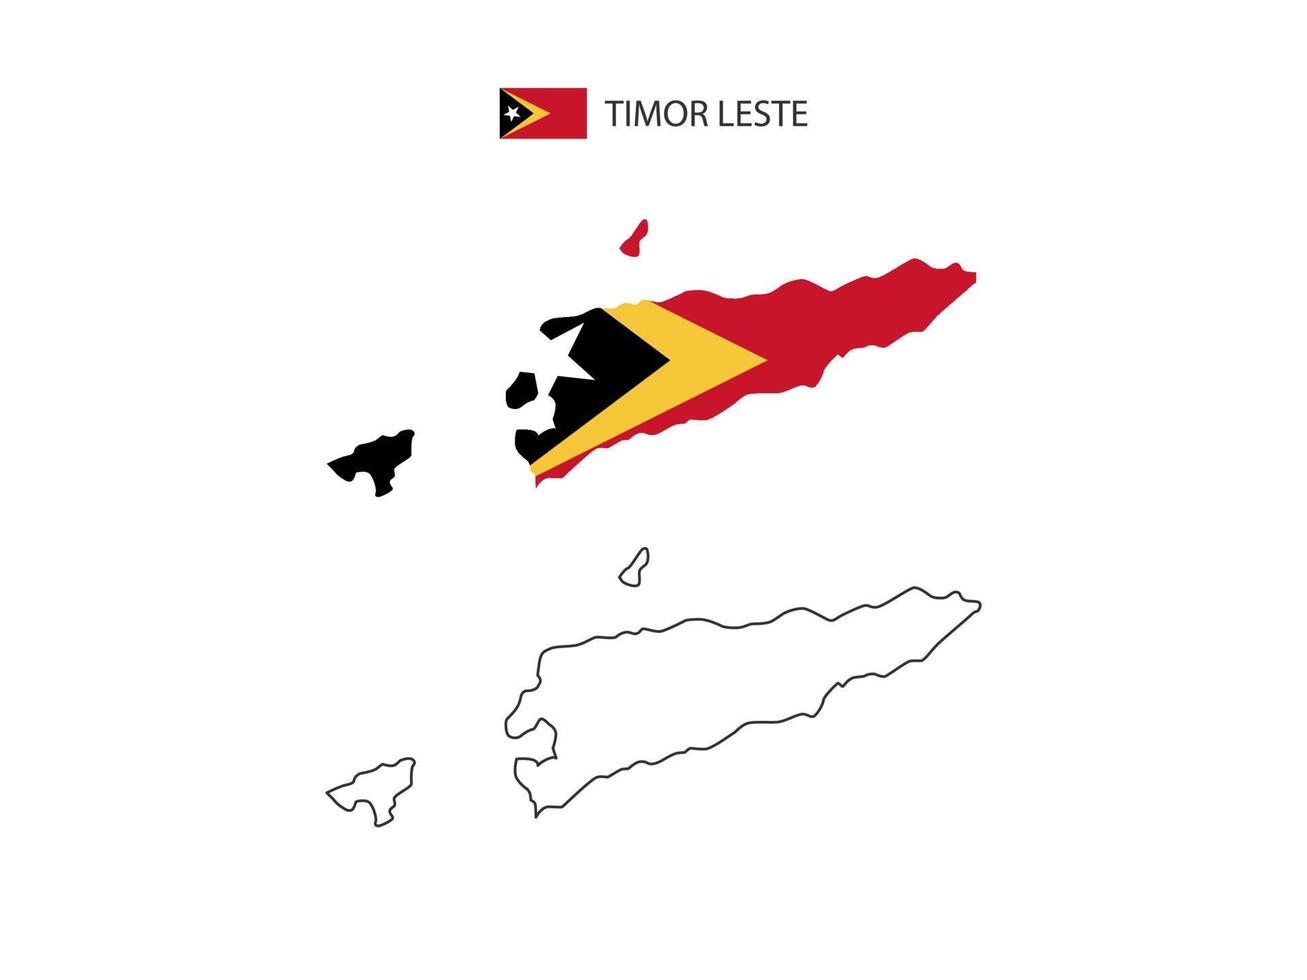 vector de ciudad de mapa de timor leste dividido por estilo de simplicidad de contorno. tiene 2 versiones, versión de línea delgada negra y versión de color de bandera de país. ambos mapas estaban en el fondo blanco.